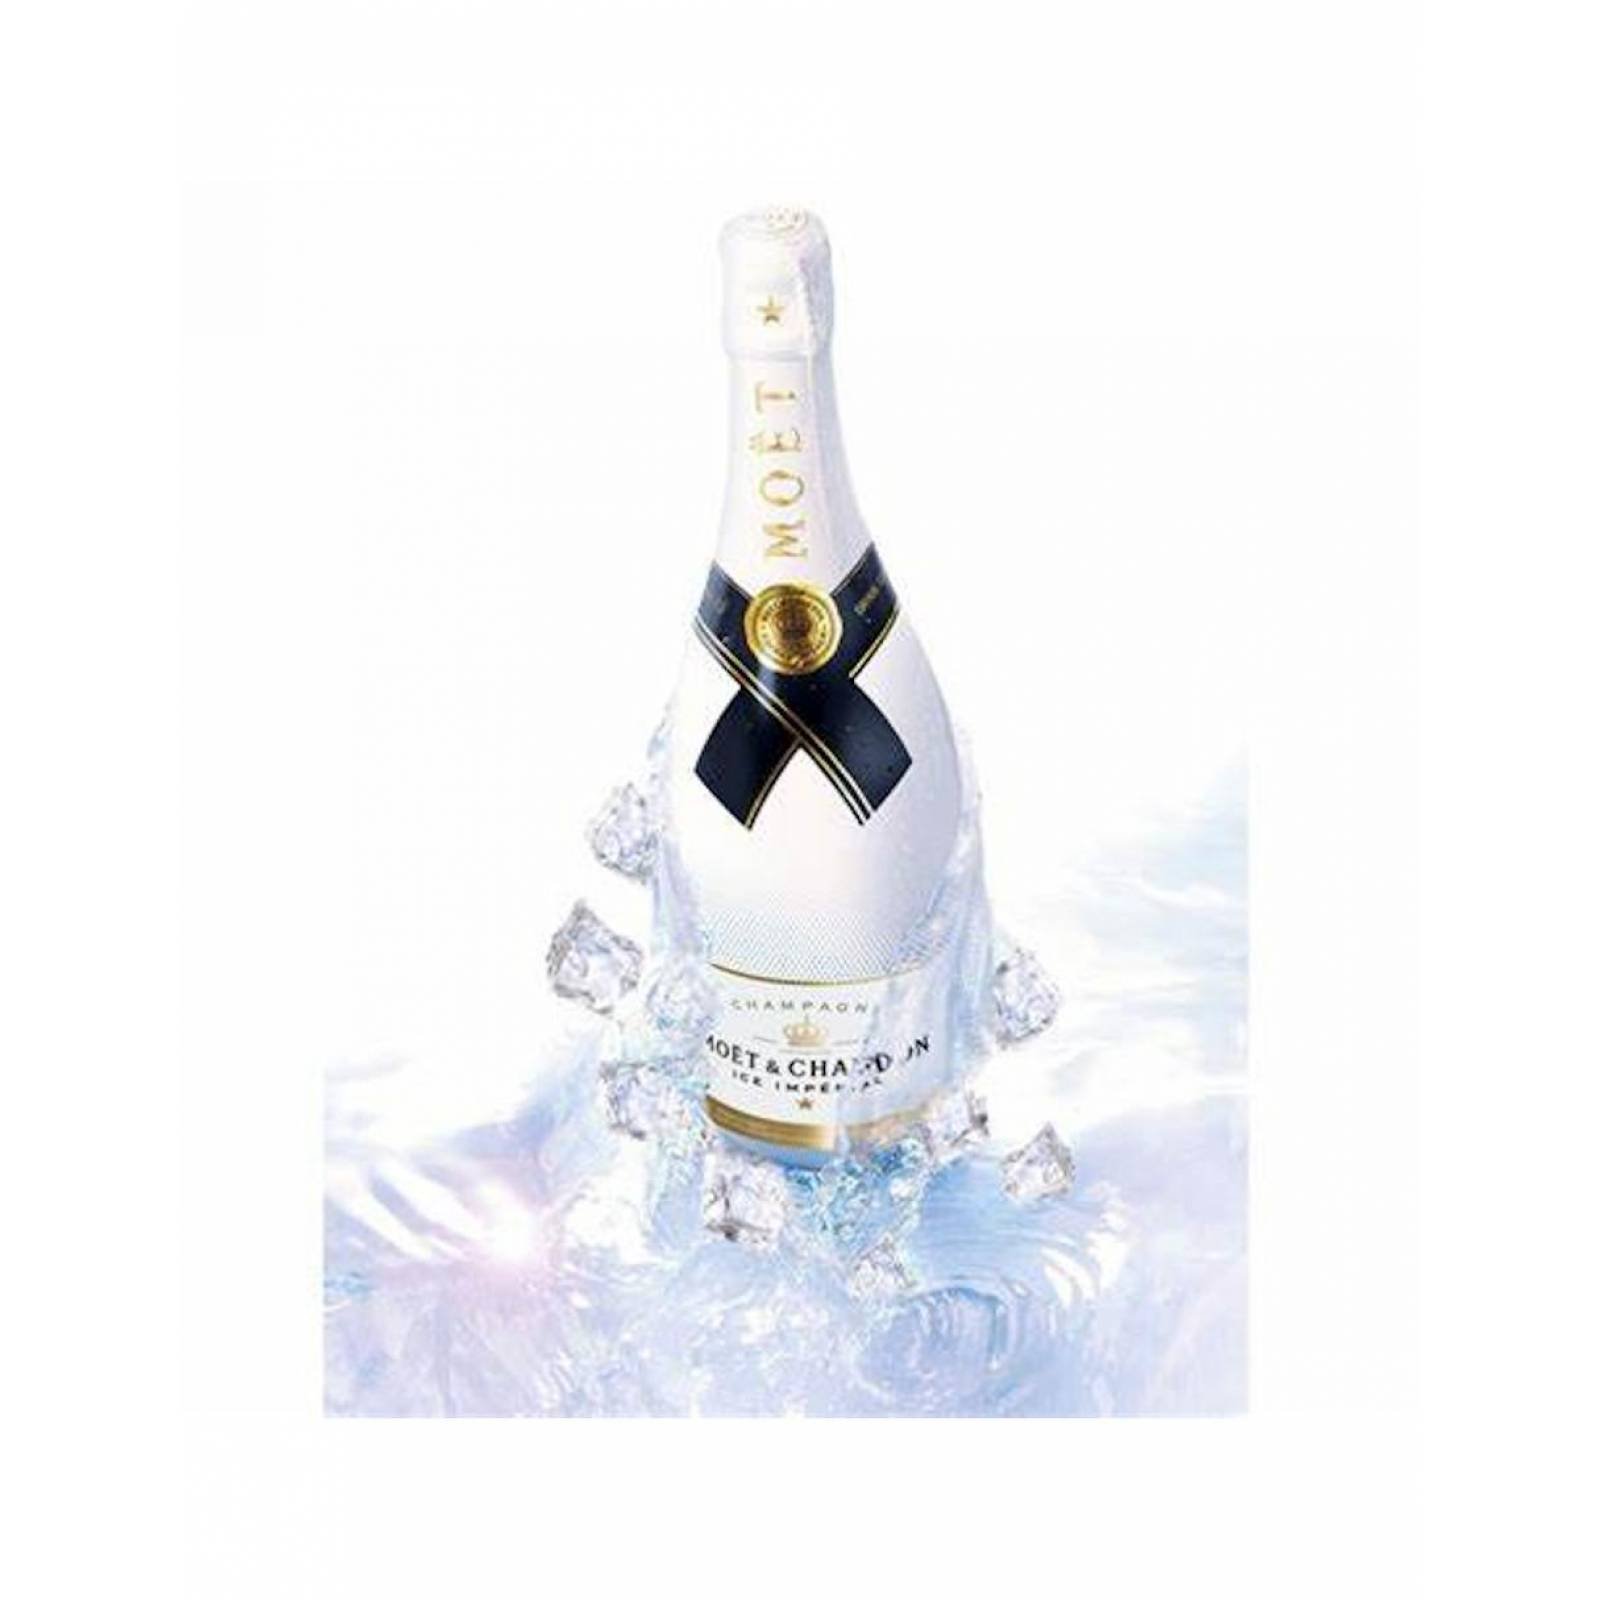 Pack de 6 Champagne Moet & Chandon Ice Imperial de 750ml 